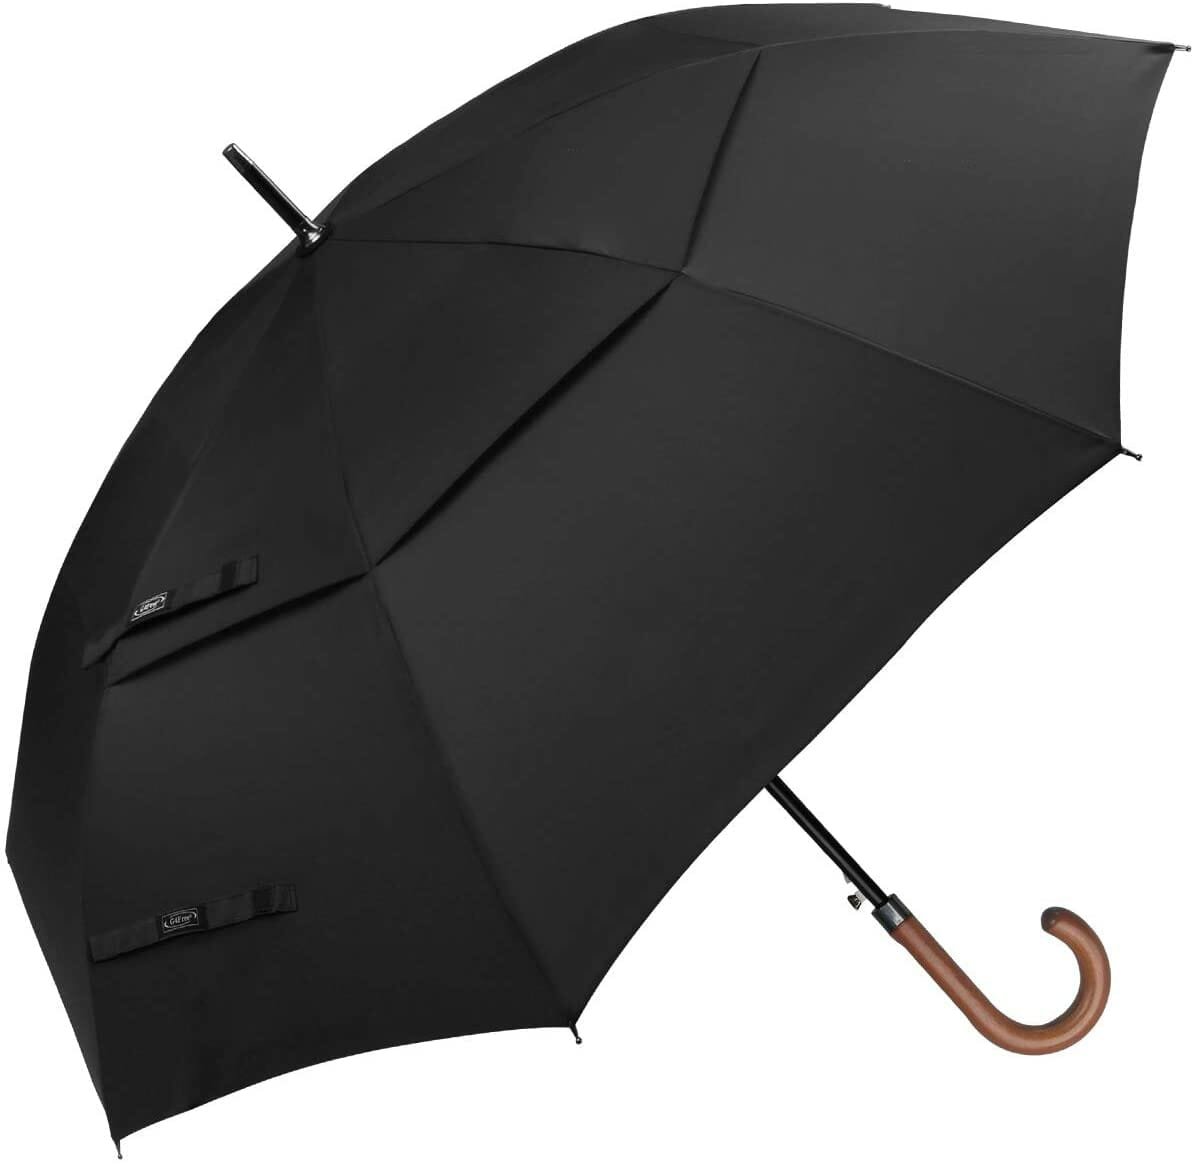 Black windproof golf umbrella